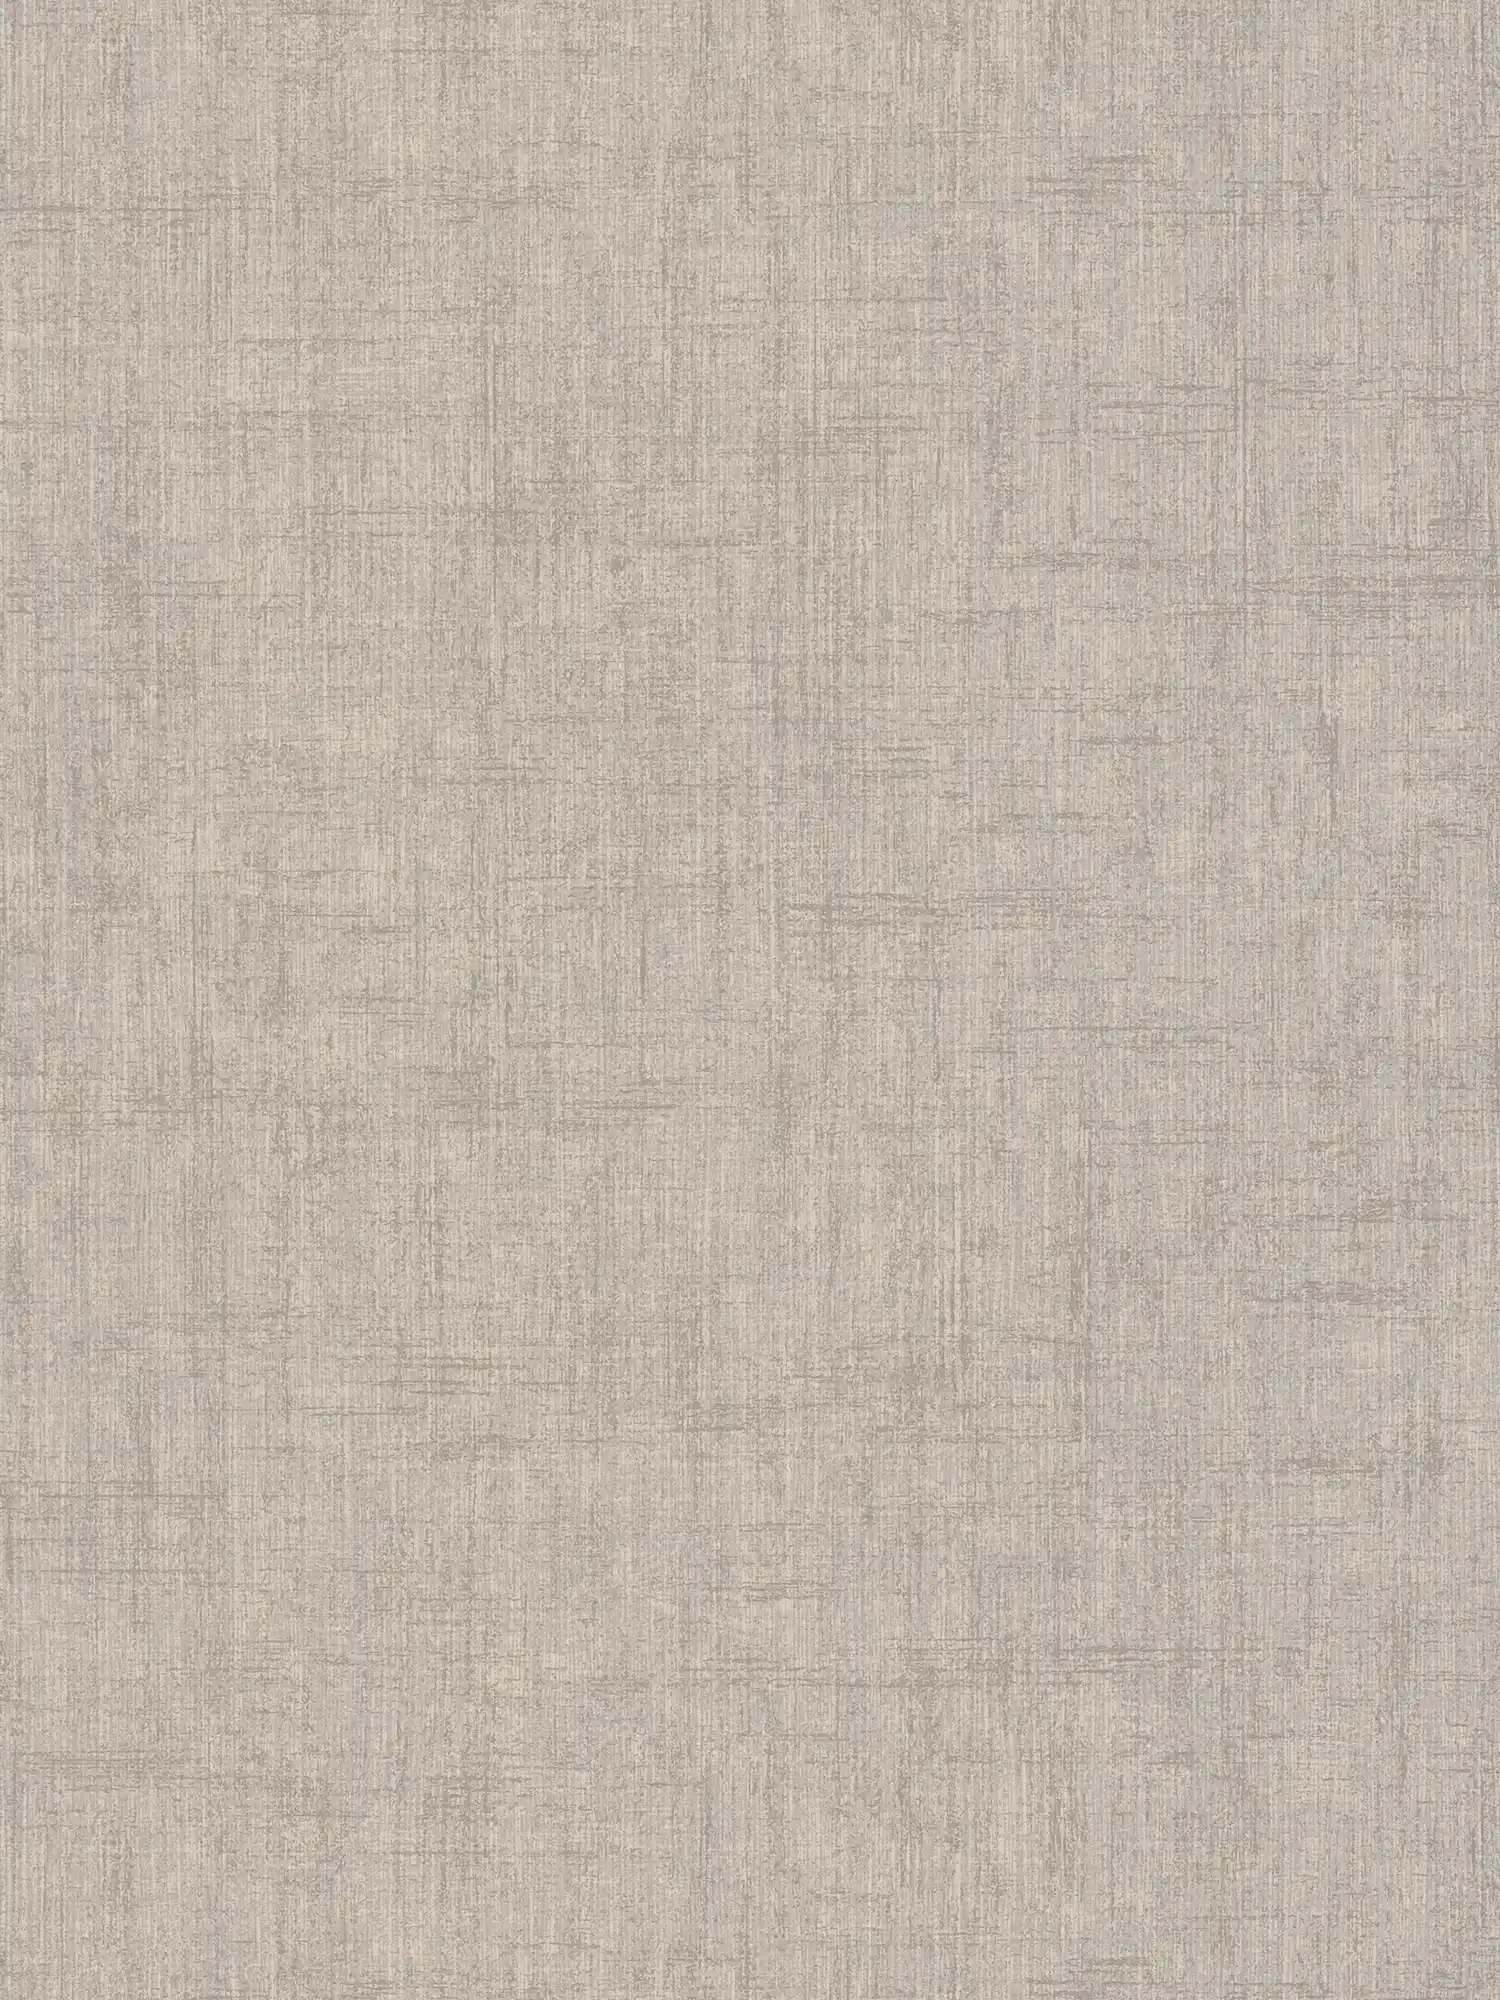 Greige behang, grove linnenlook - grijs, beige
